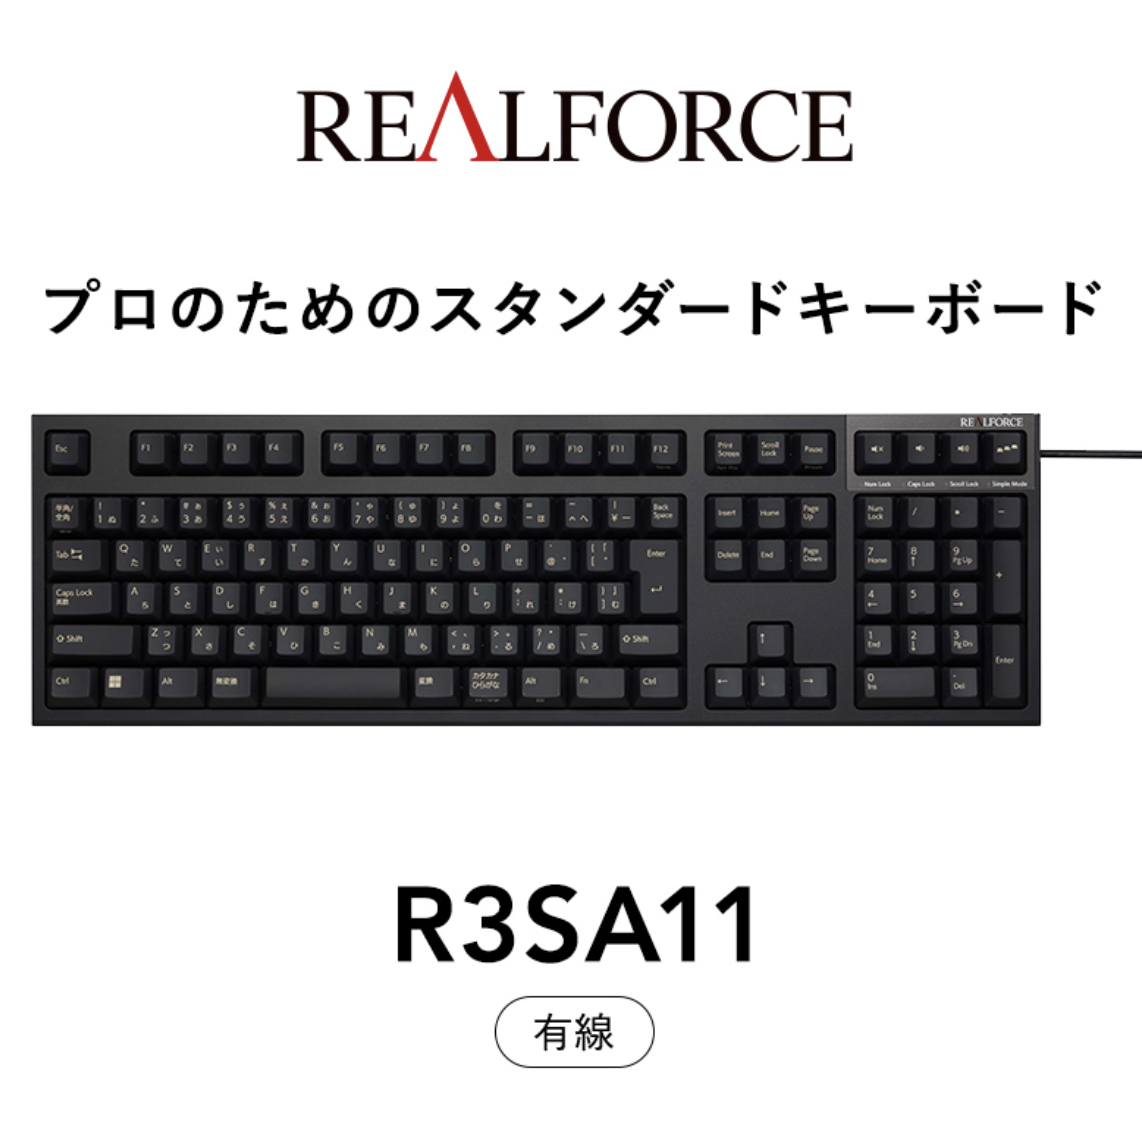 REALFORCE R3SA11 ブラック 日本語配列 レーザー印刷 キー荷重45g